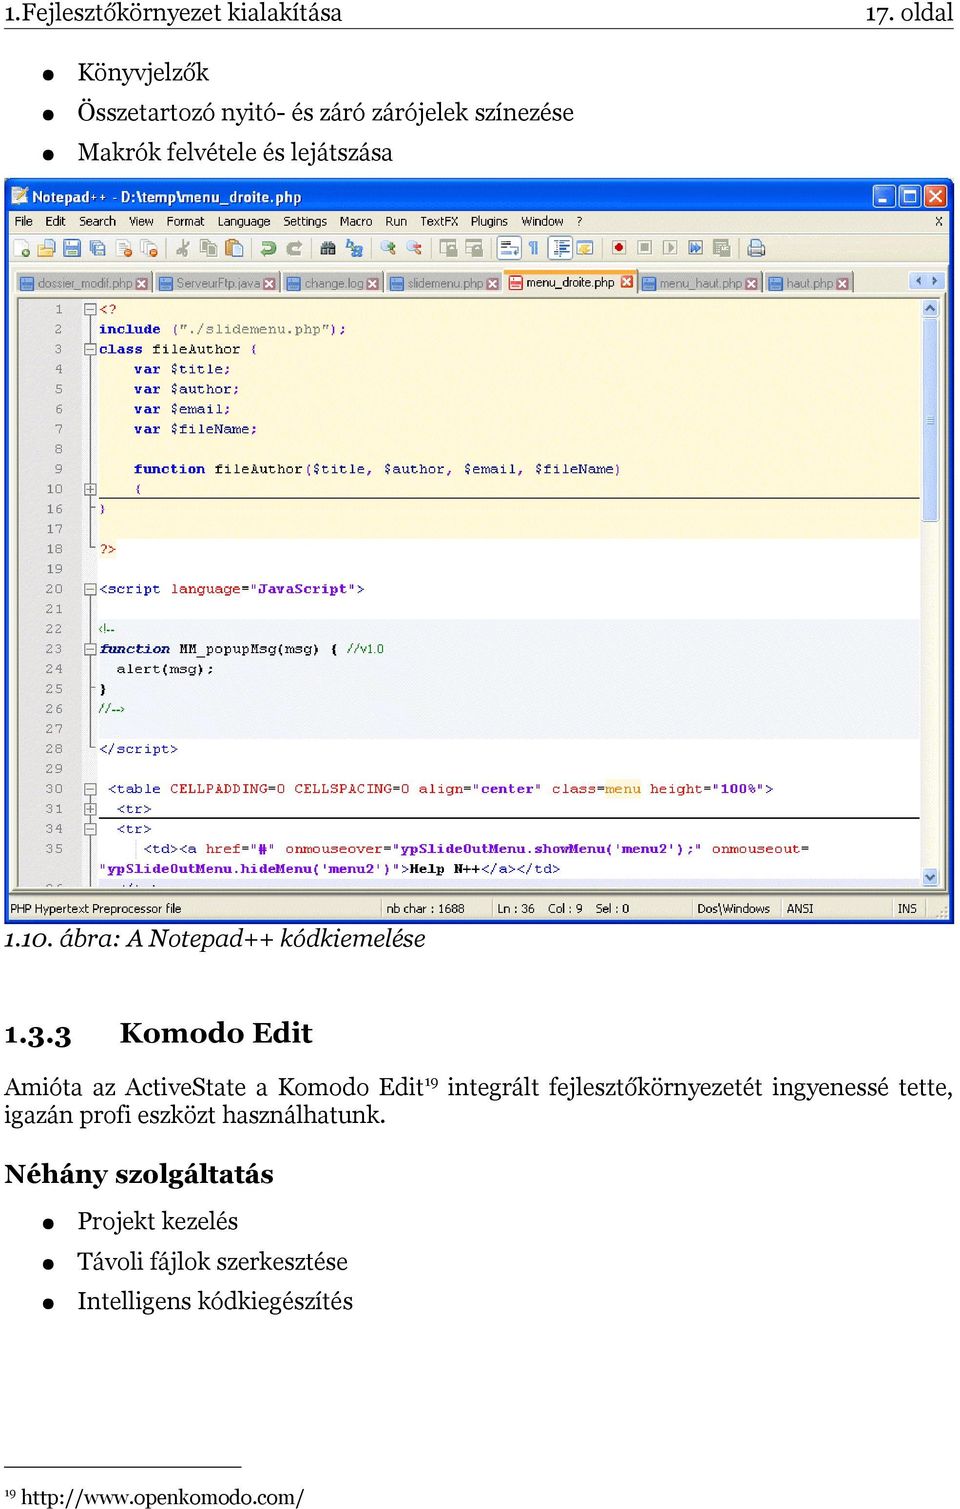 3 Komodo Edit Amióta az ActiveState a Komodo Edit19 integrált fejlesztőkörnyezetét ingyenessé tette, igazán